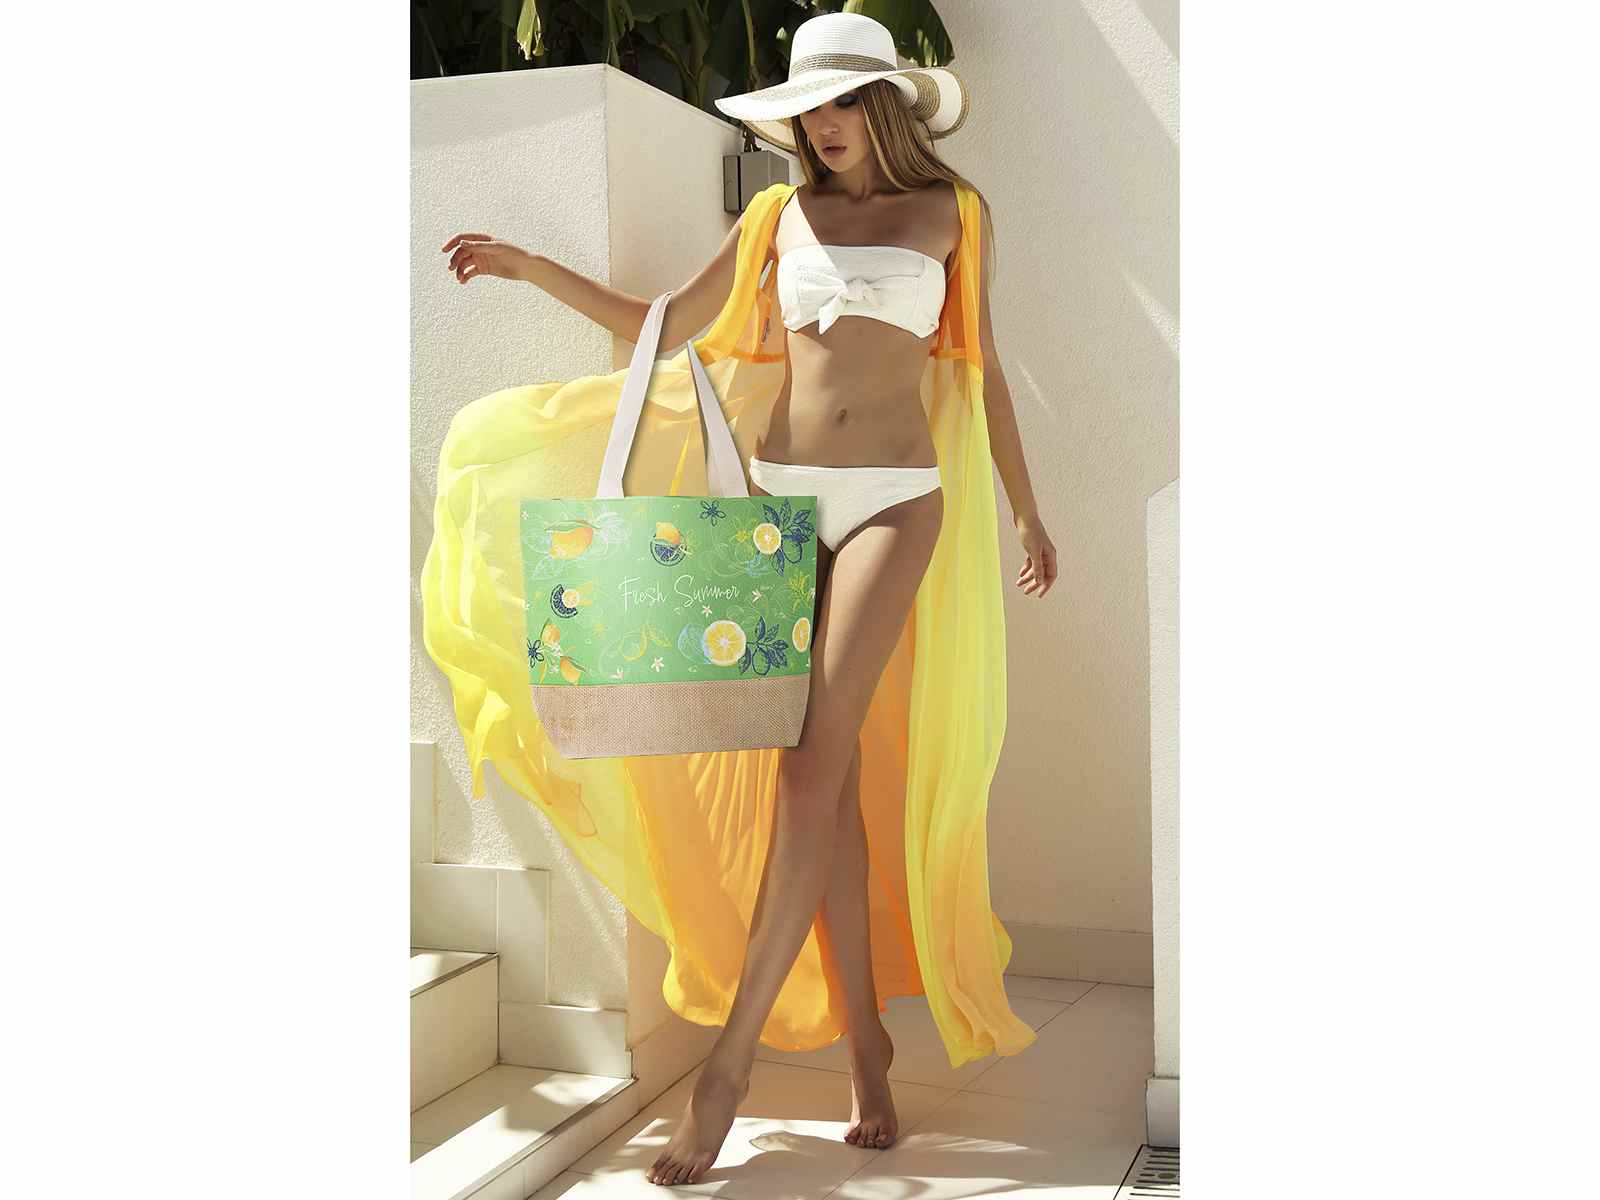 Print Jute Shopper Bag, Beach bags